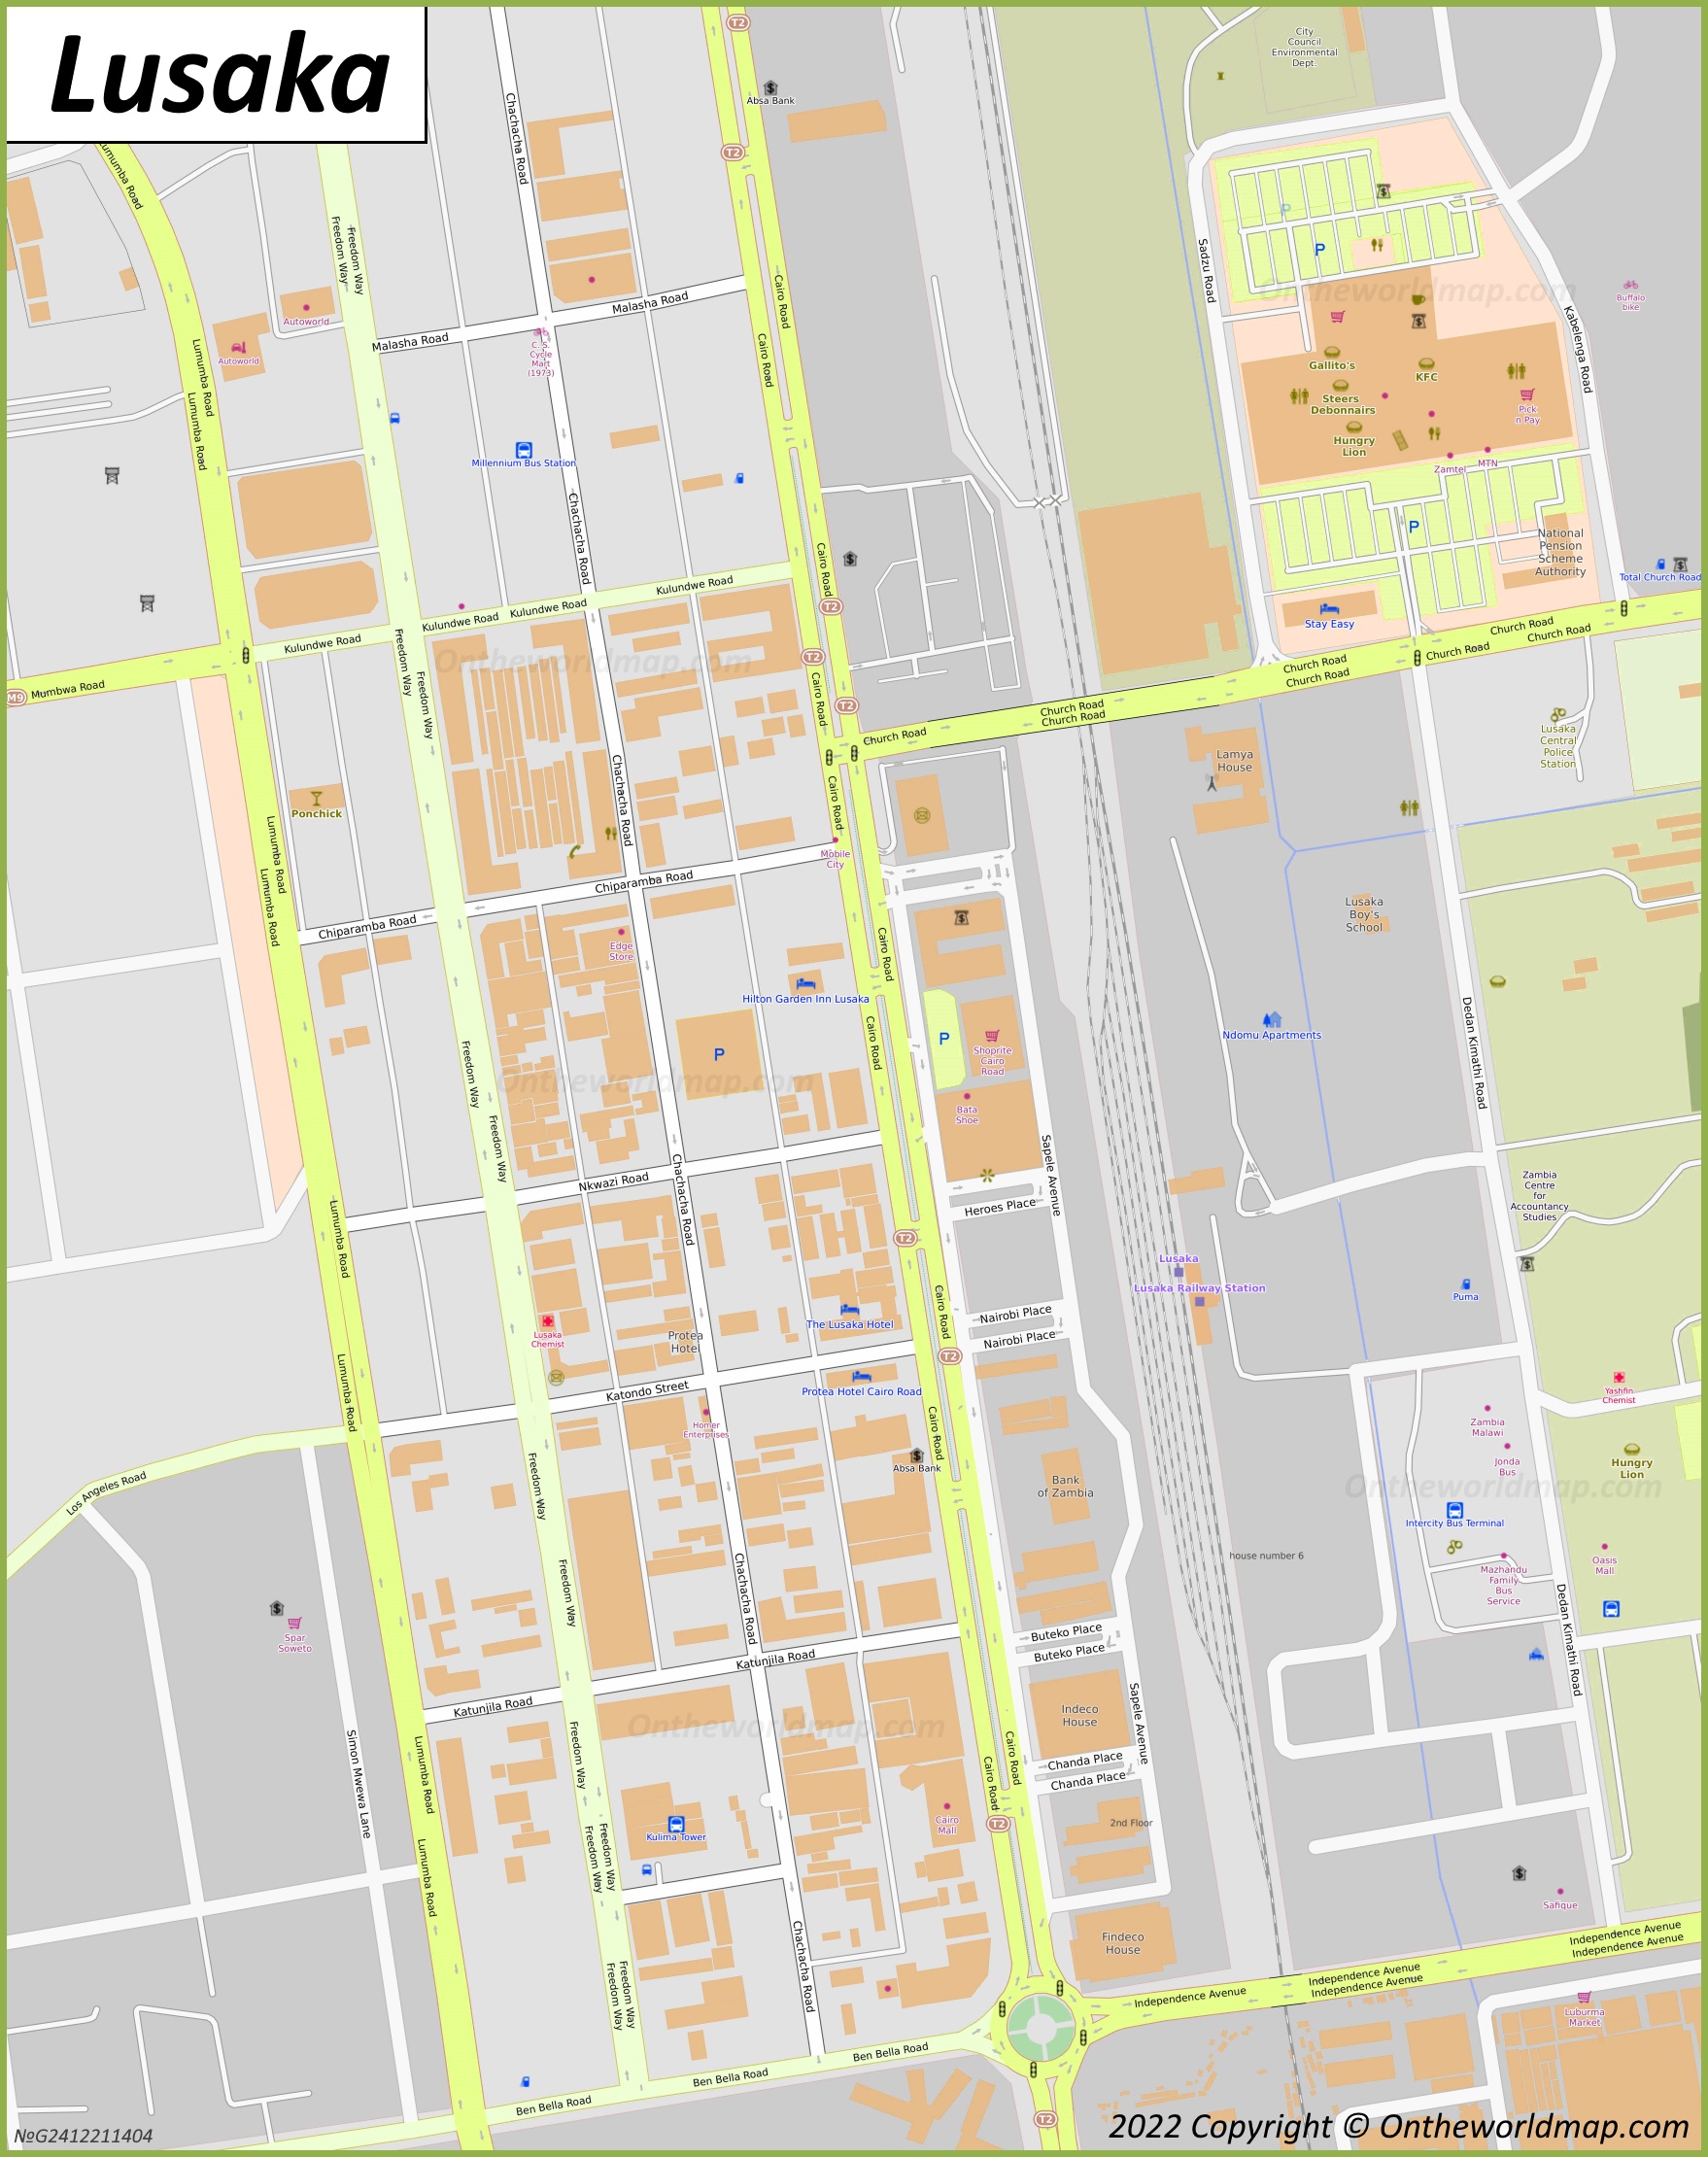 Lusaka City Centre Map